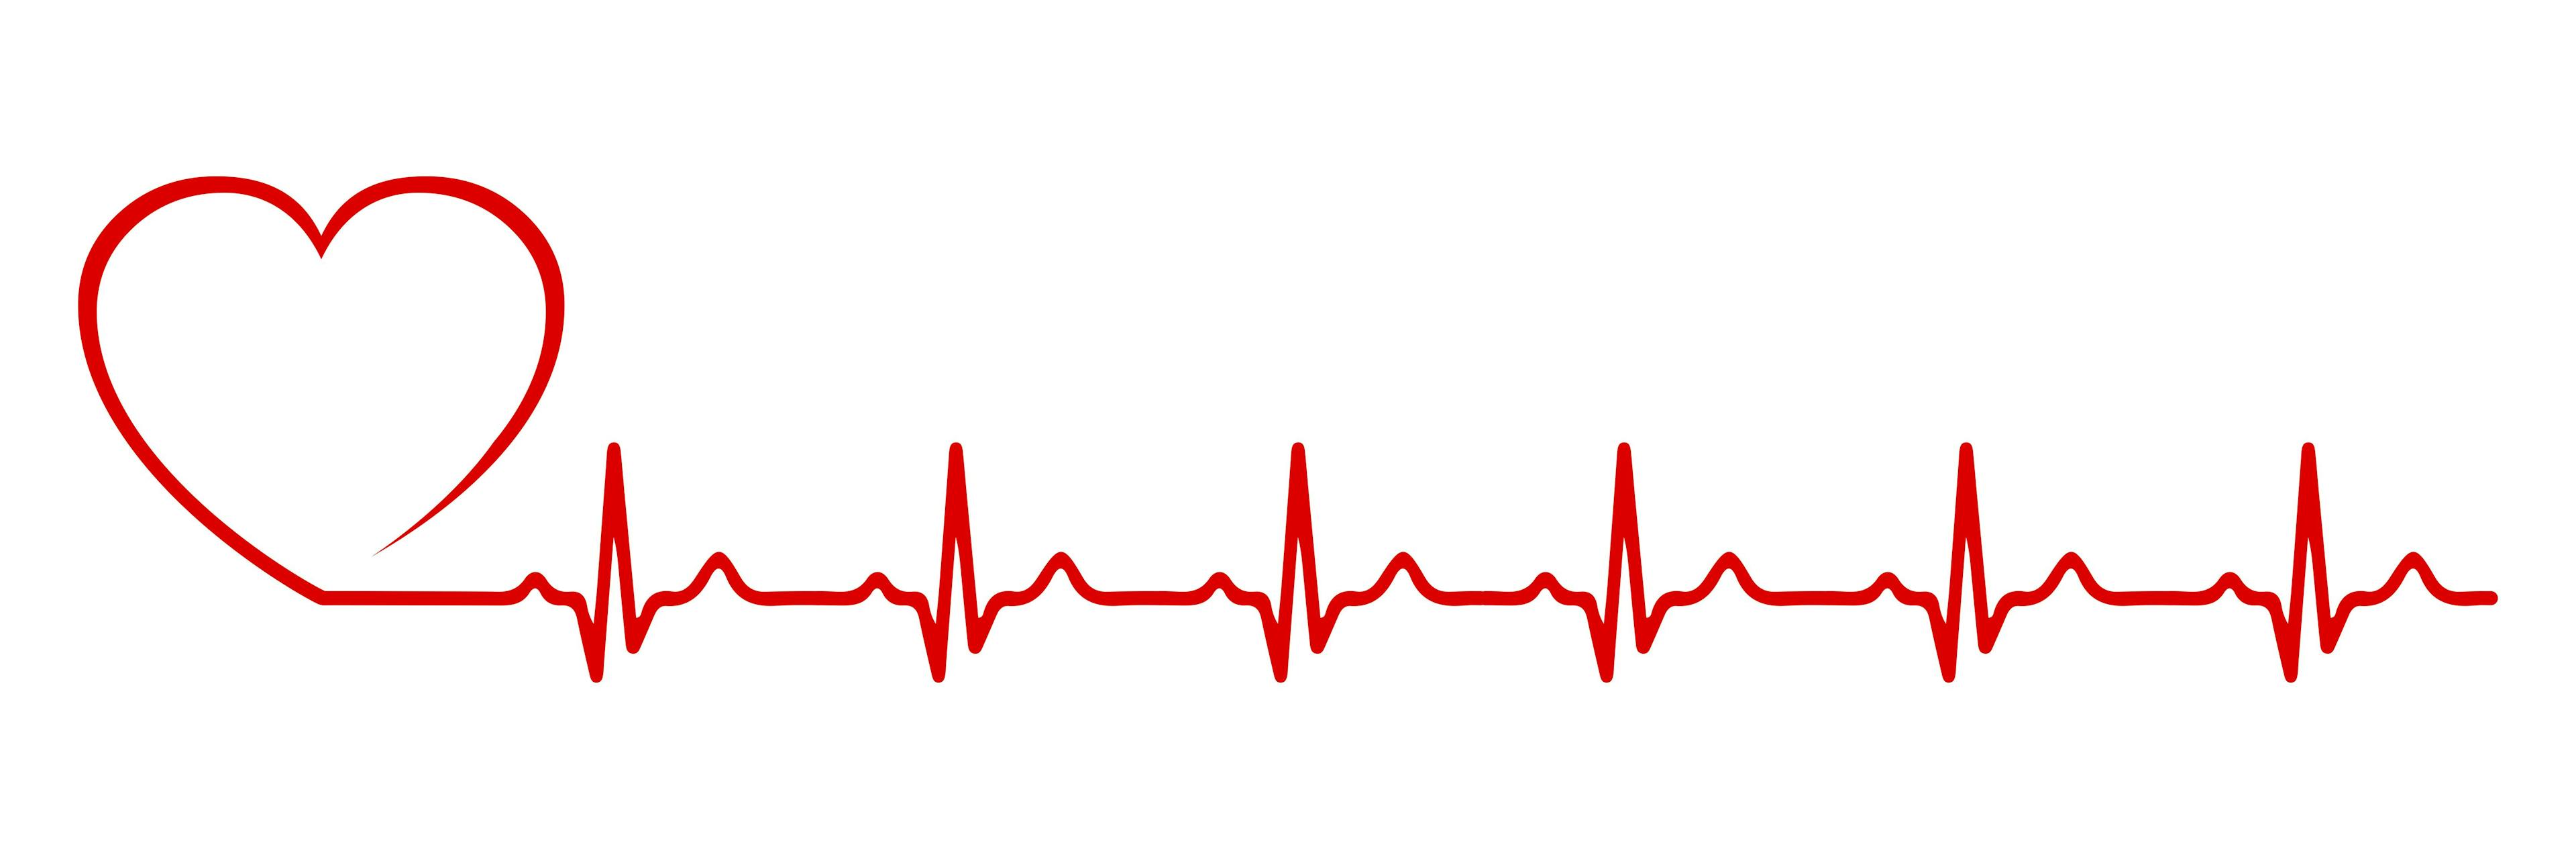 heart monitor pulse heart shape